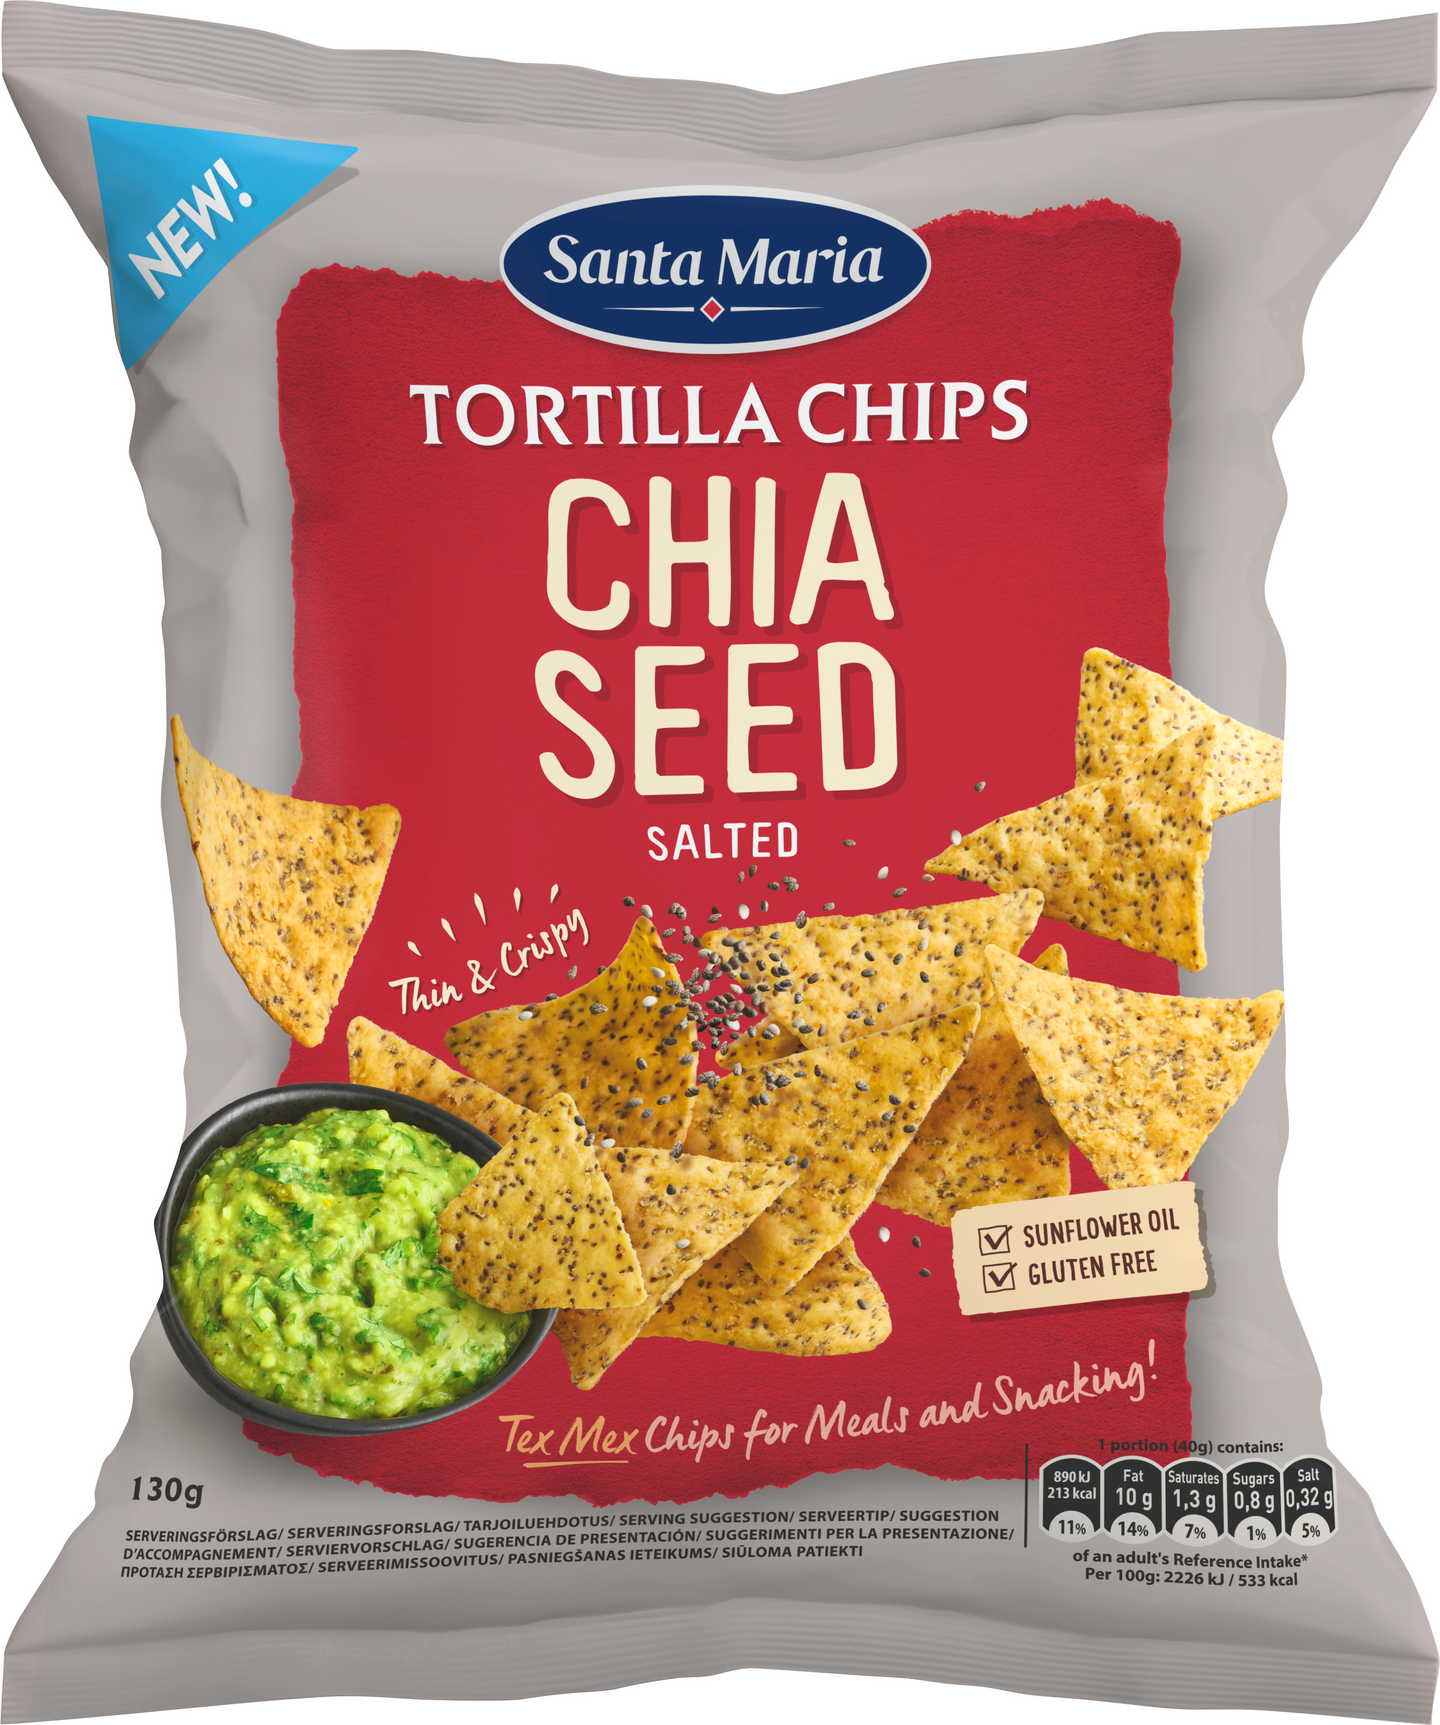 Santa Maria Tortilla Chips 130g Chia Seed